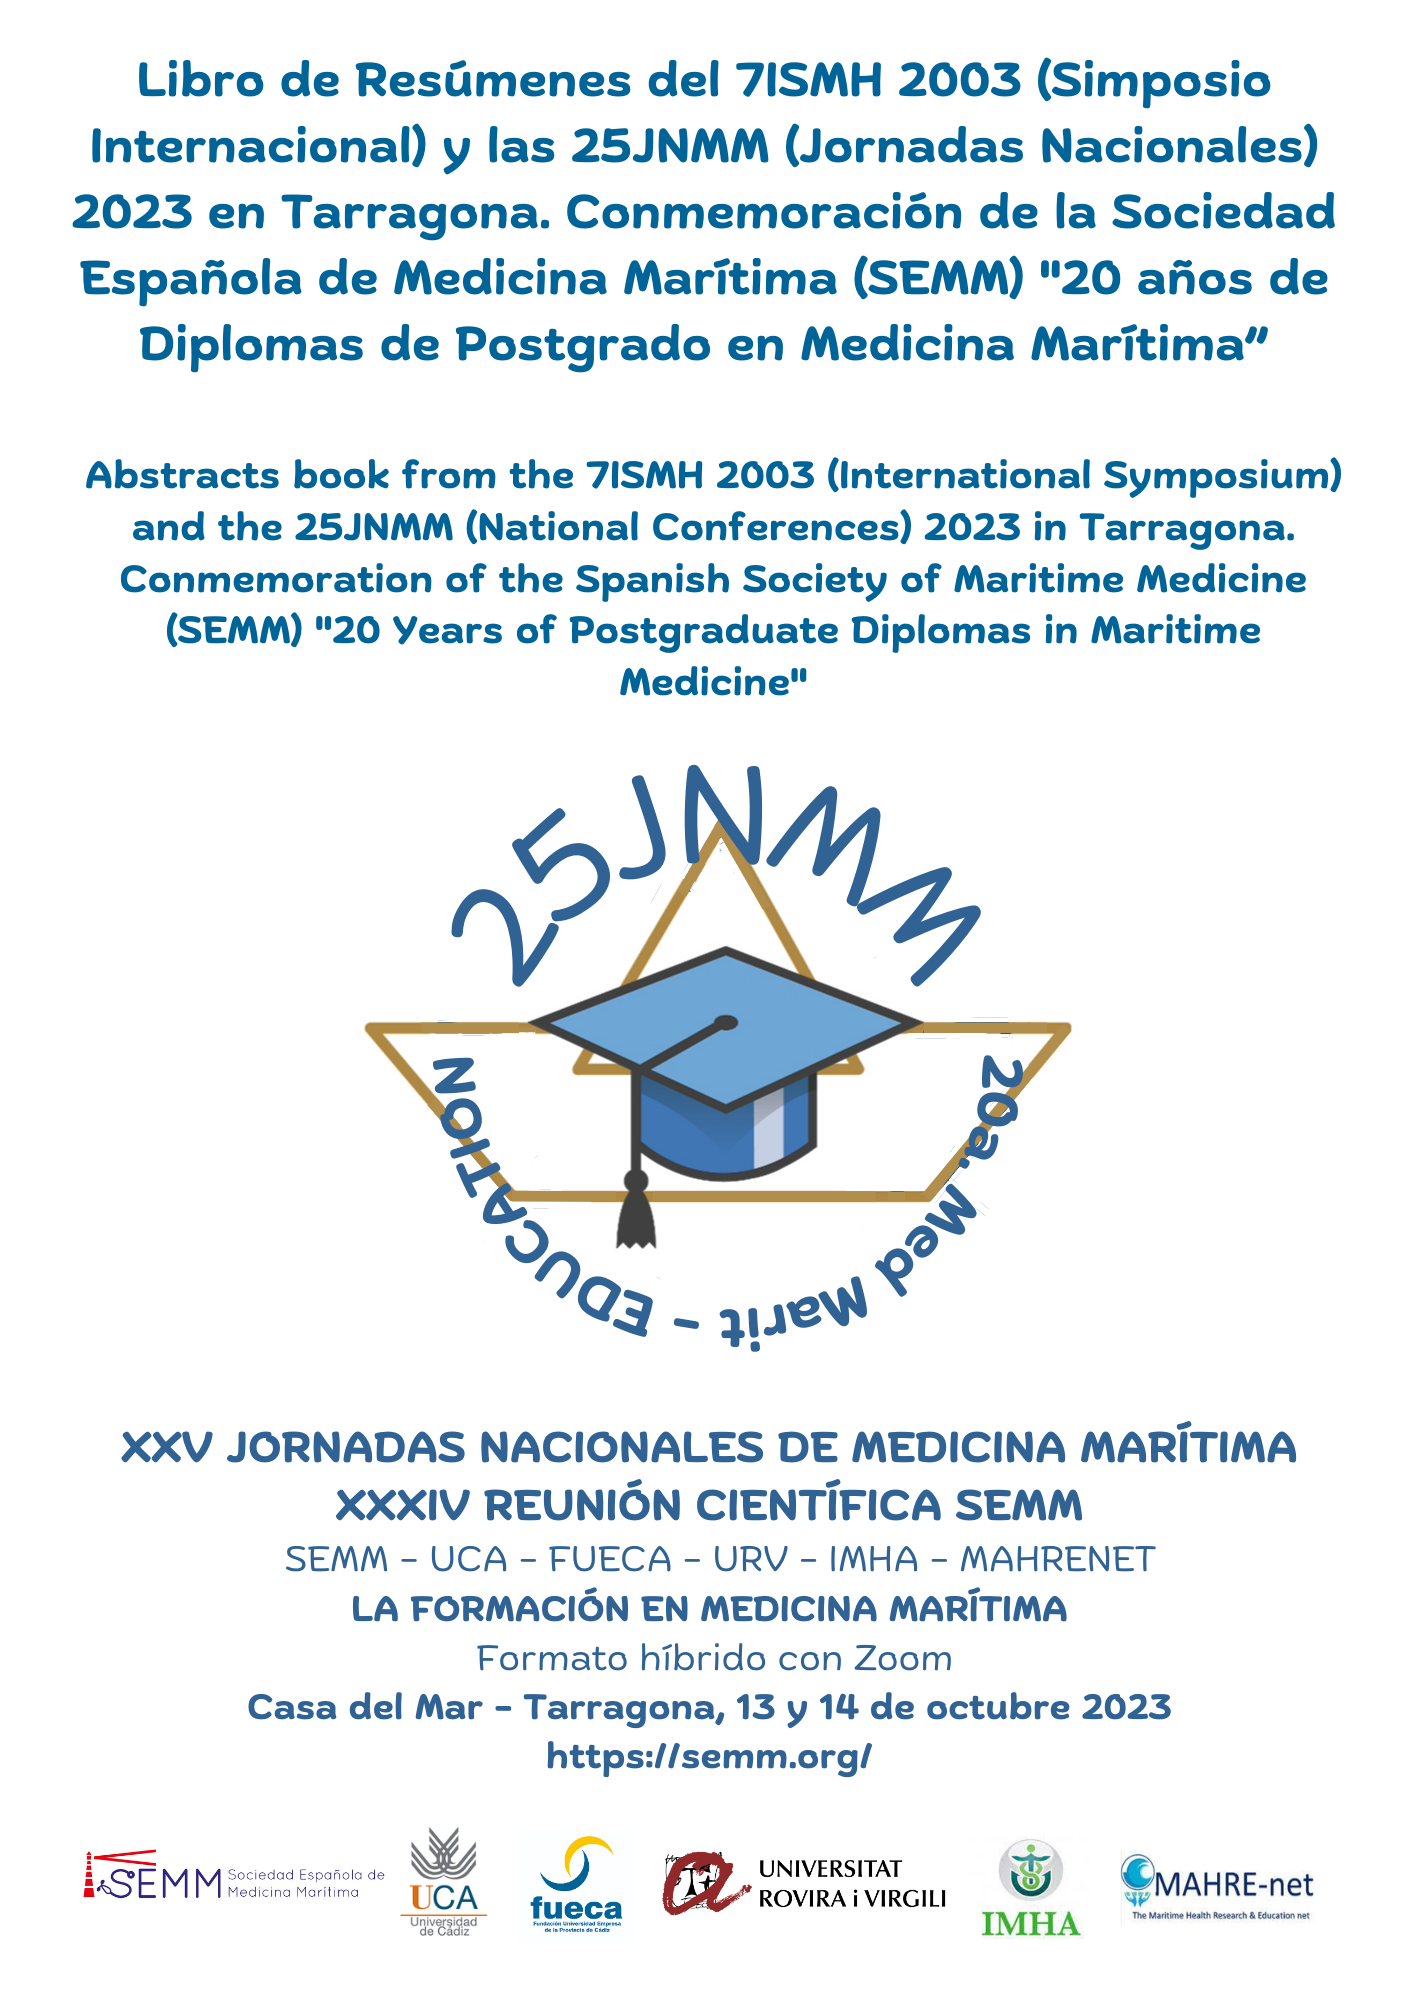 XXV Jornadas Nacionales de Medicina Marítima - Libro de Resúmenes /Abstracts Book - Conmemorativo 20 años Postgrados Medicina Maritima